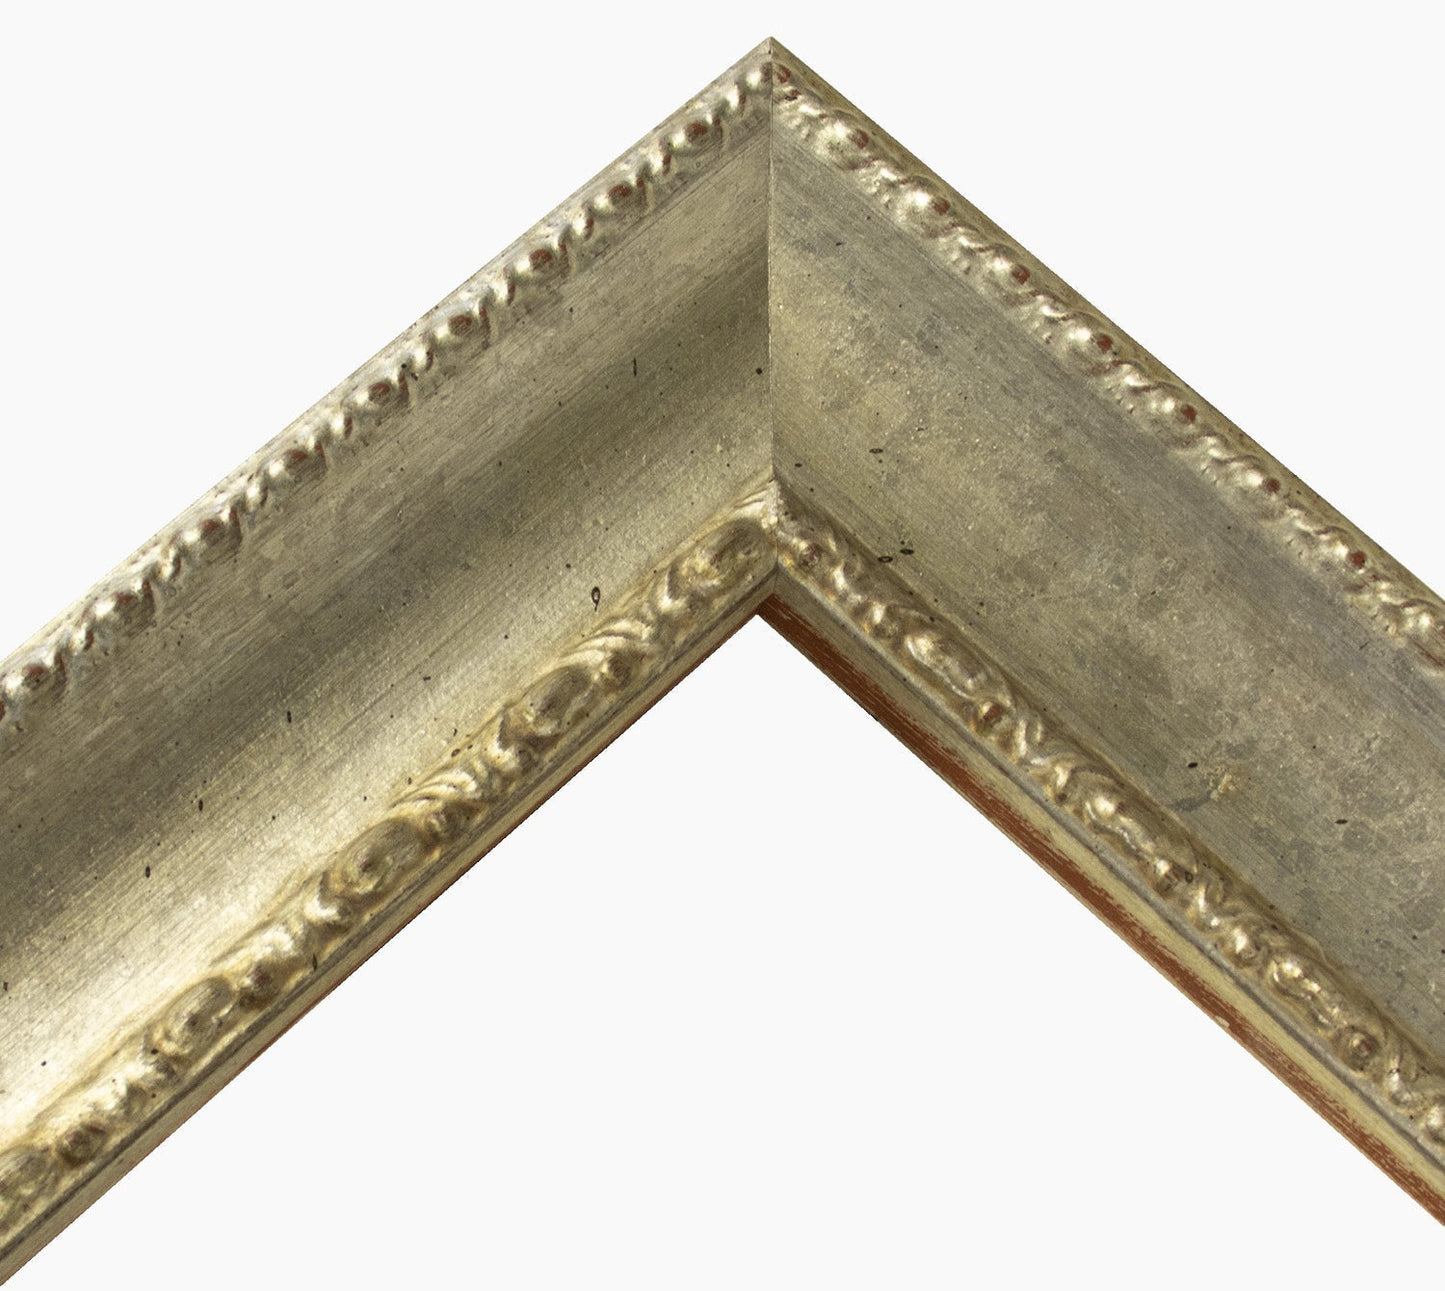 620.011 cadre en bois à la feuille d'argent mesure de profil 65x48 mm Lombarda cornici S.n.c.